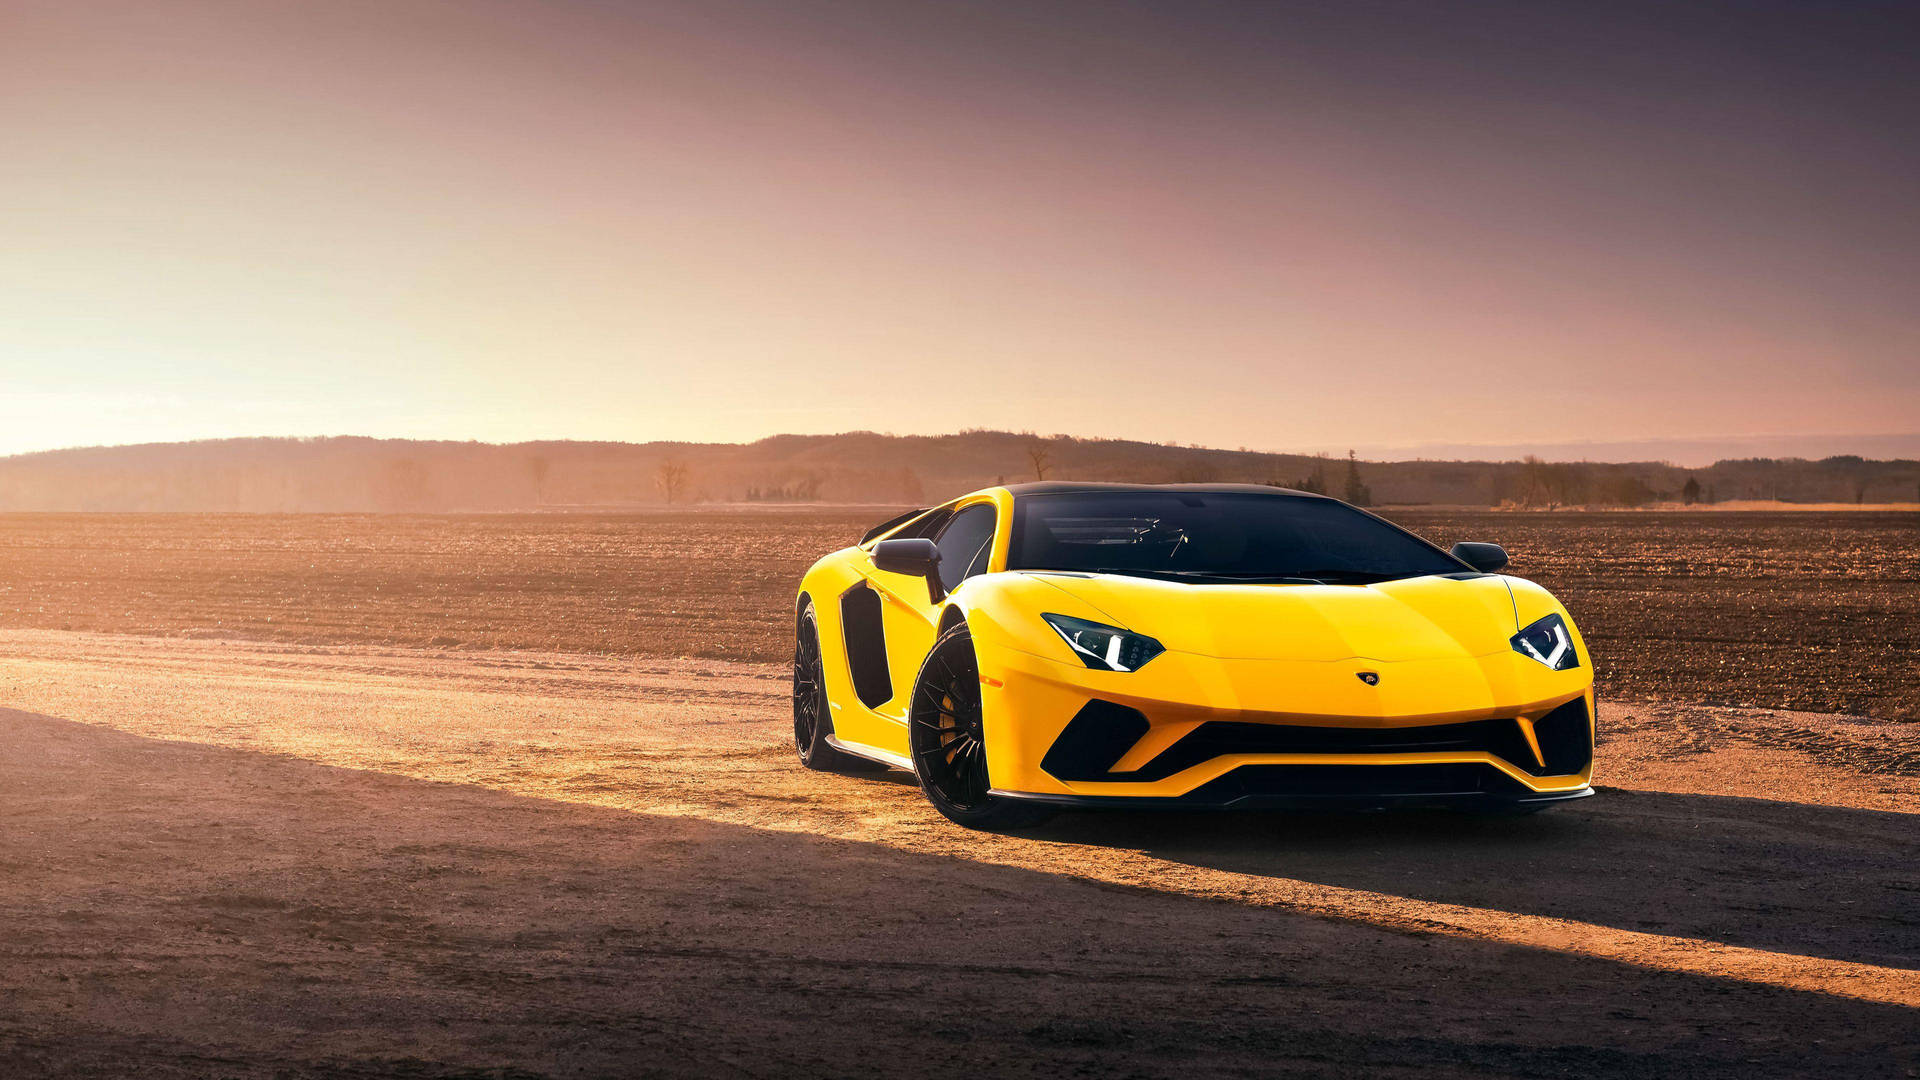 Cool Cars: Yellow Slim Lamborghini Wallpaper